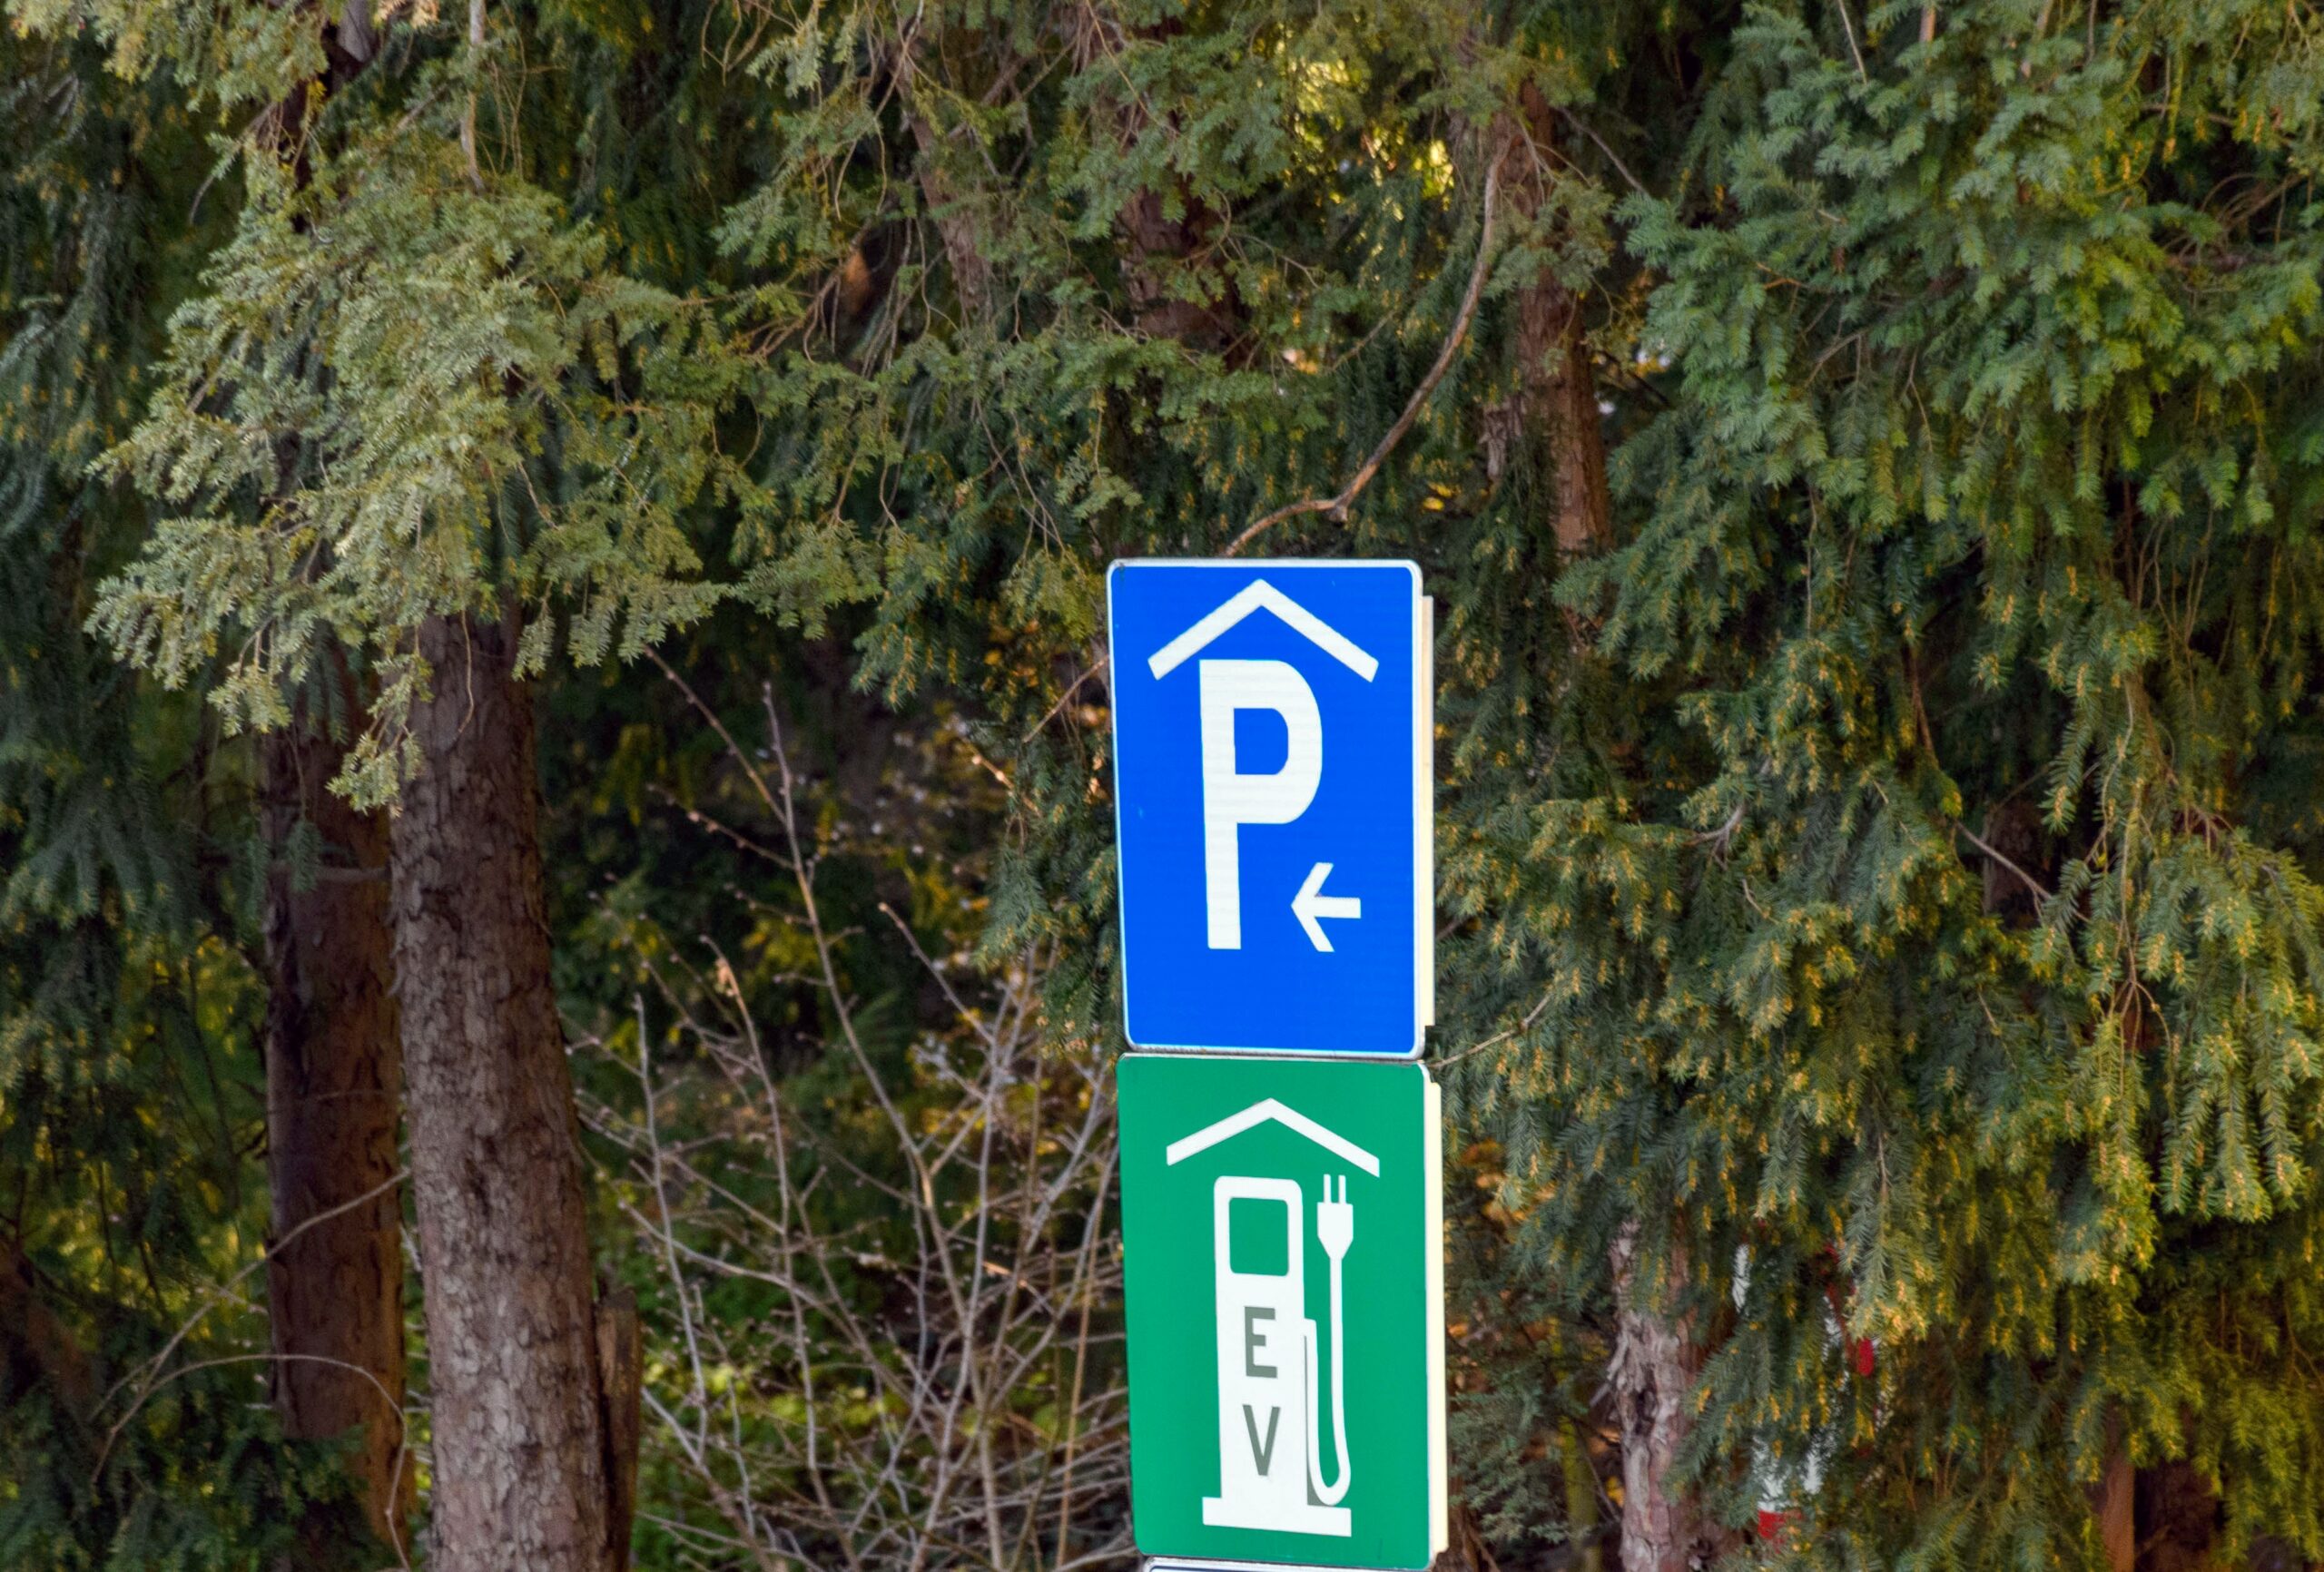 street-sign-for-parking-garage-and-ev-electronic-v-2022-11-14-19-31-20-utc